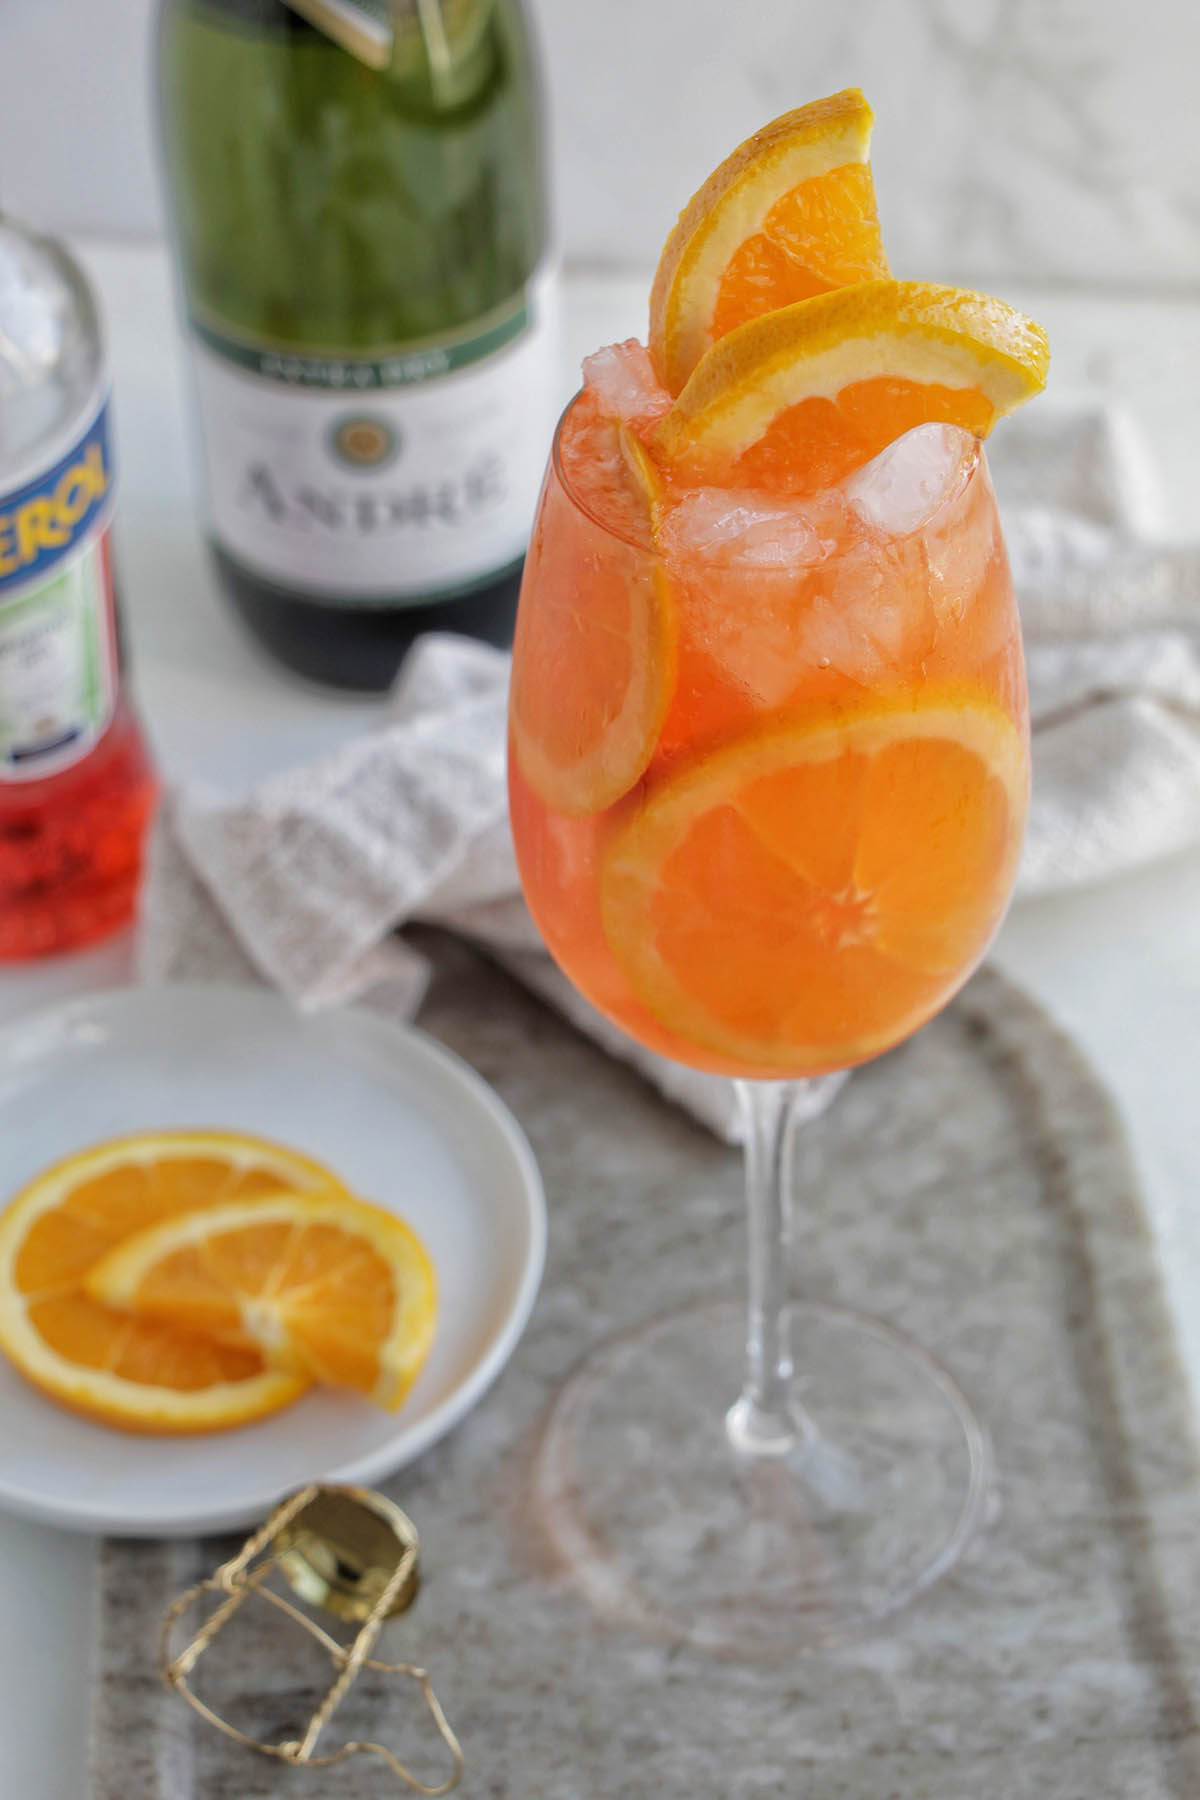 Aperol spritz cocktail in a wine glass with orange garnish.